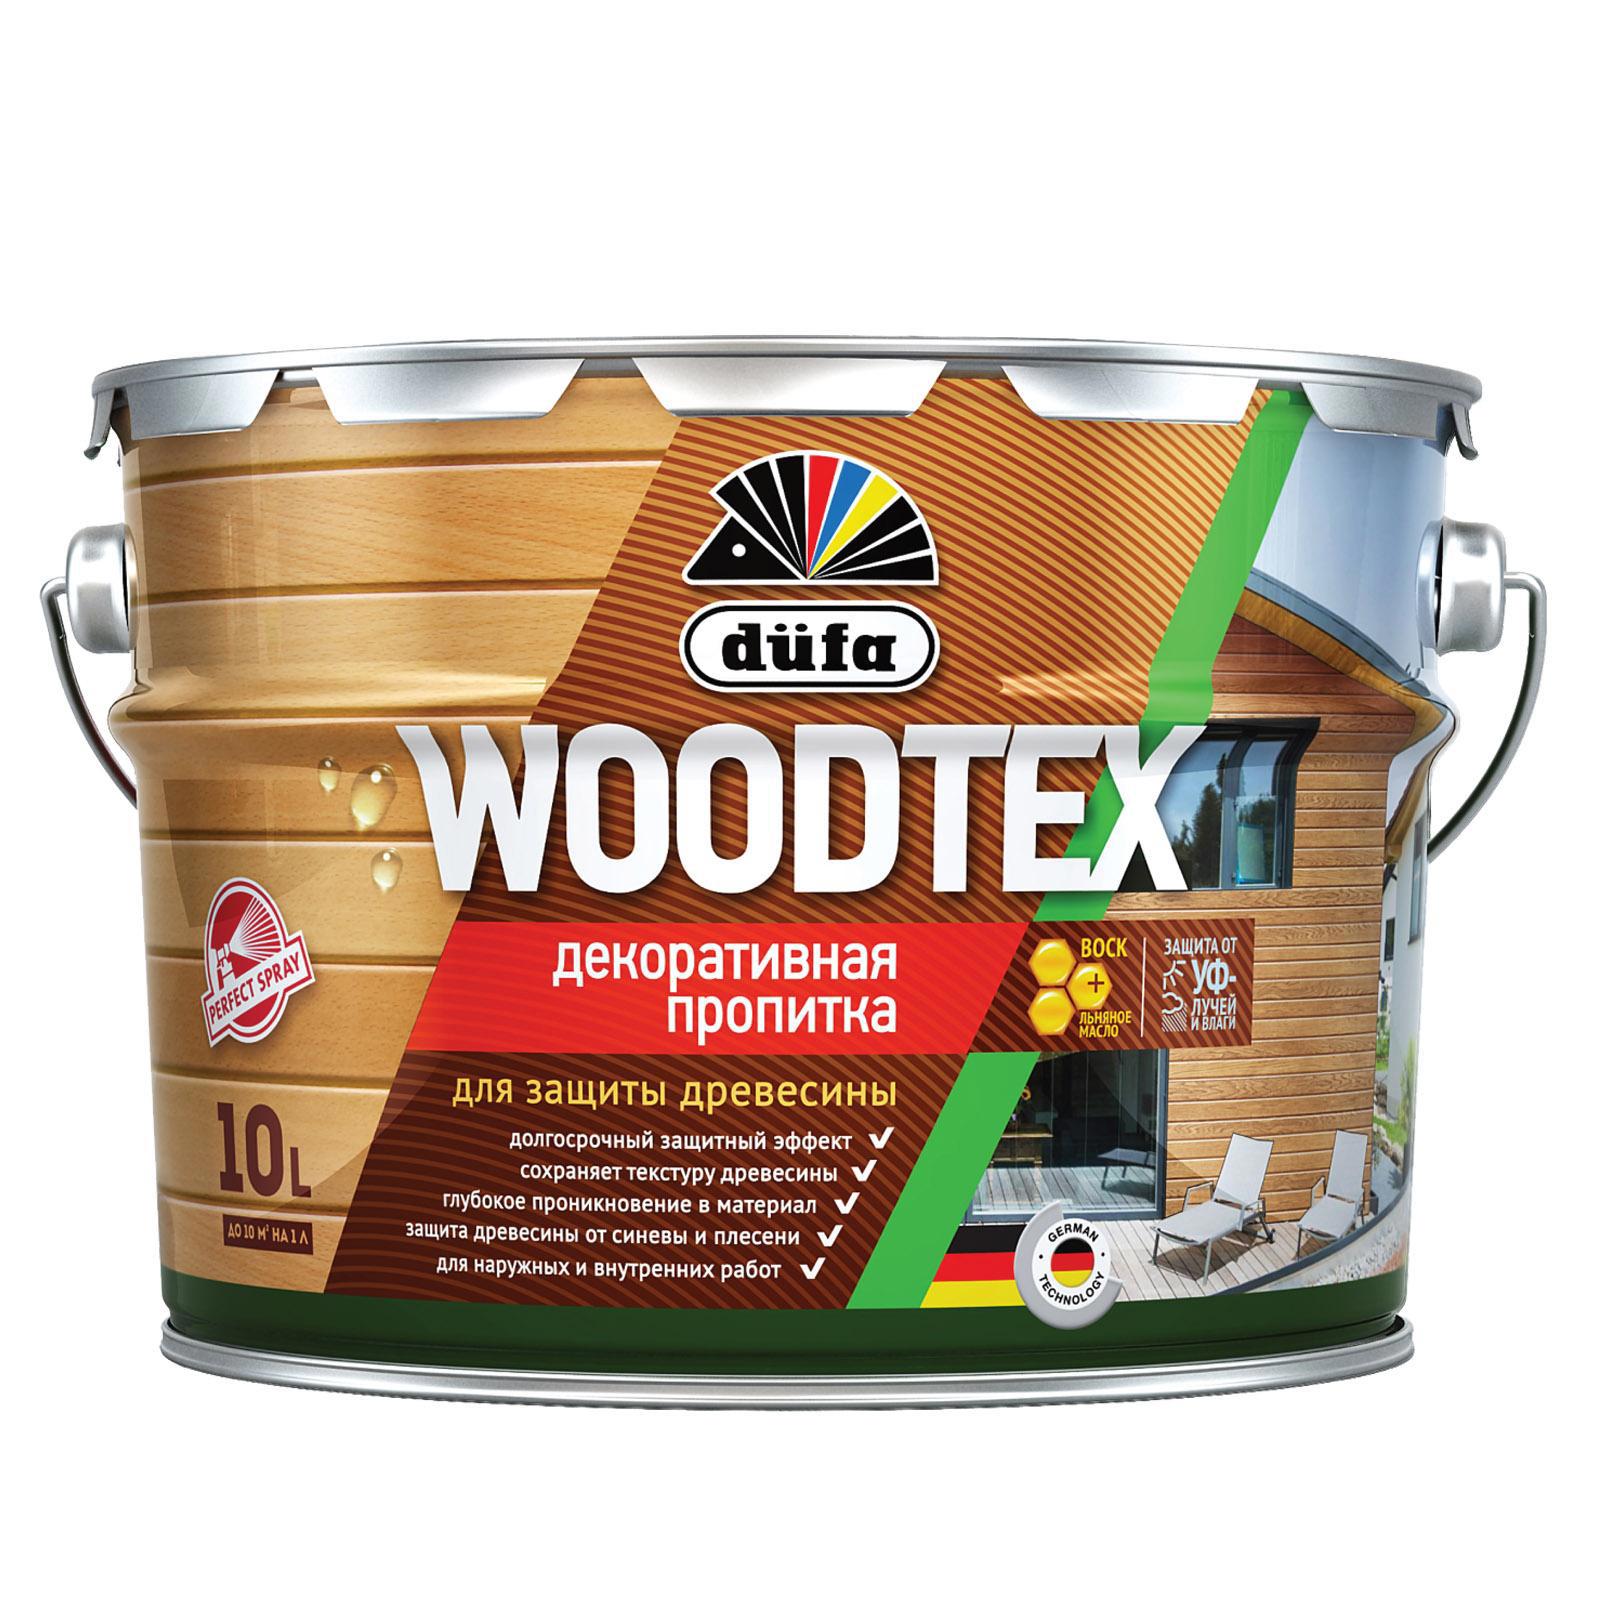 90194549 Пропитка декоративная для защиты древесины алкидная Woodtex тик 10 л STLM-0128481 DUFA